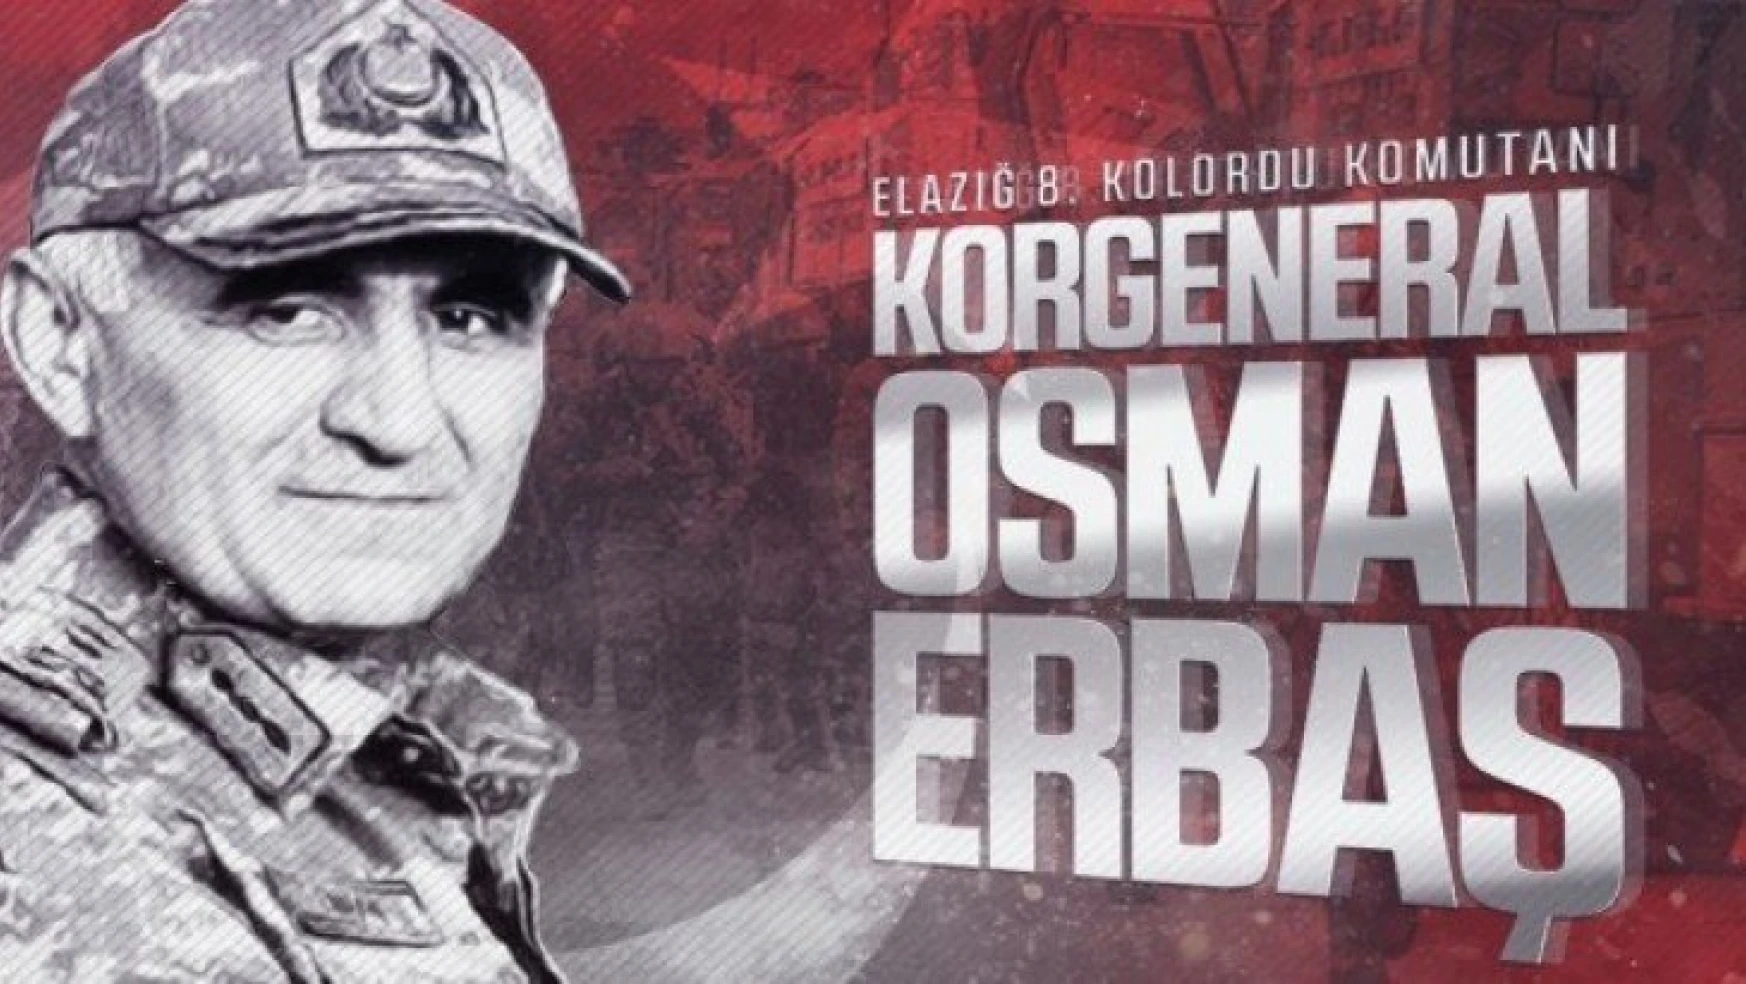 Helikopter kazasında 8. Kolordu Komutanı Korgeneral Osman Erbaş şehit oldu.